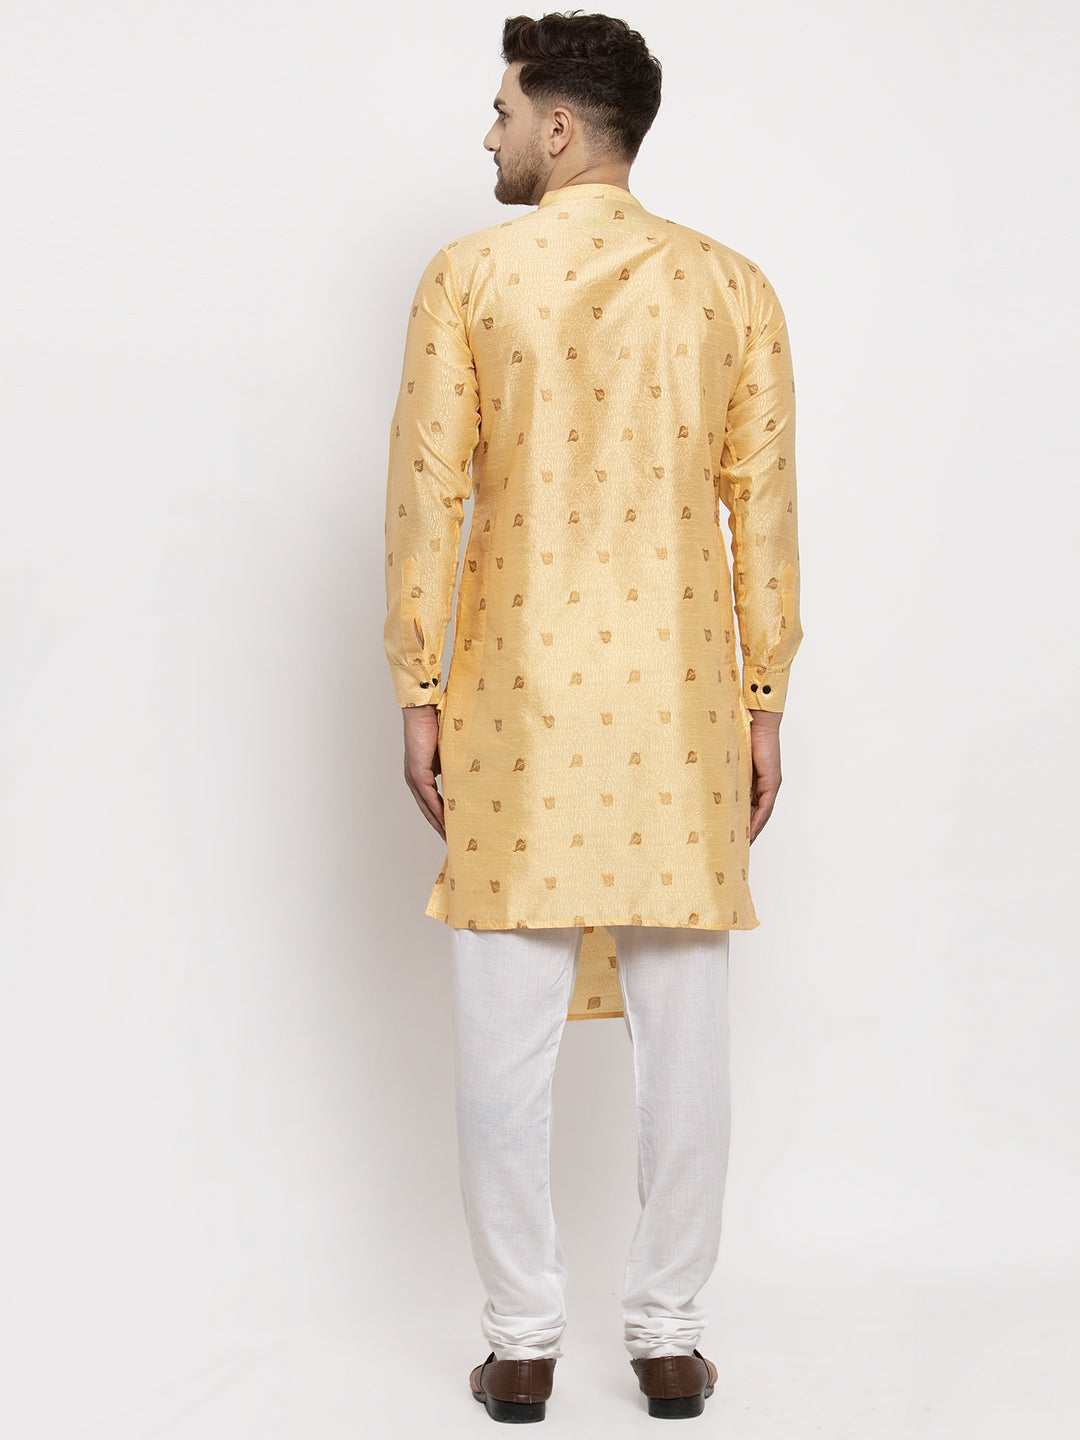 KLOTTHE Golden Cotton Woven Design Kurta With Pyjama